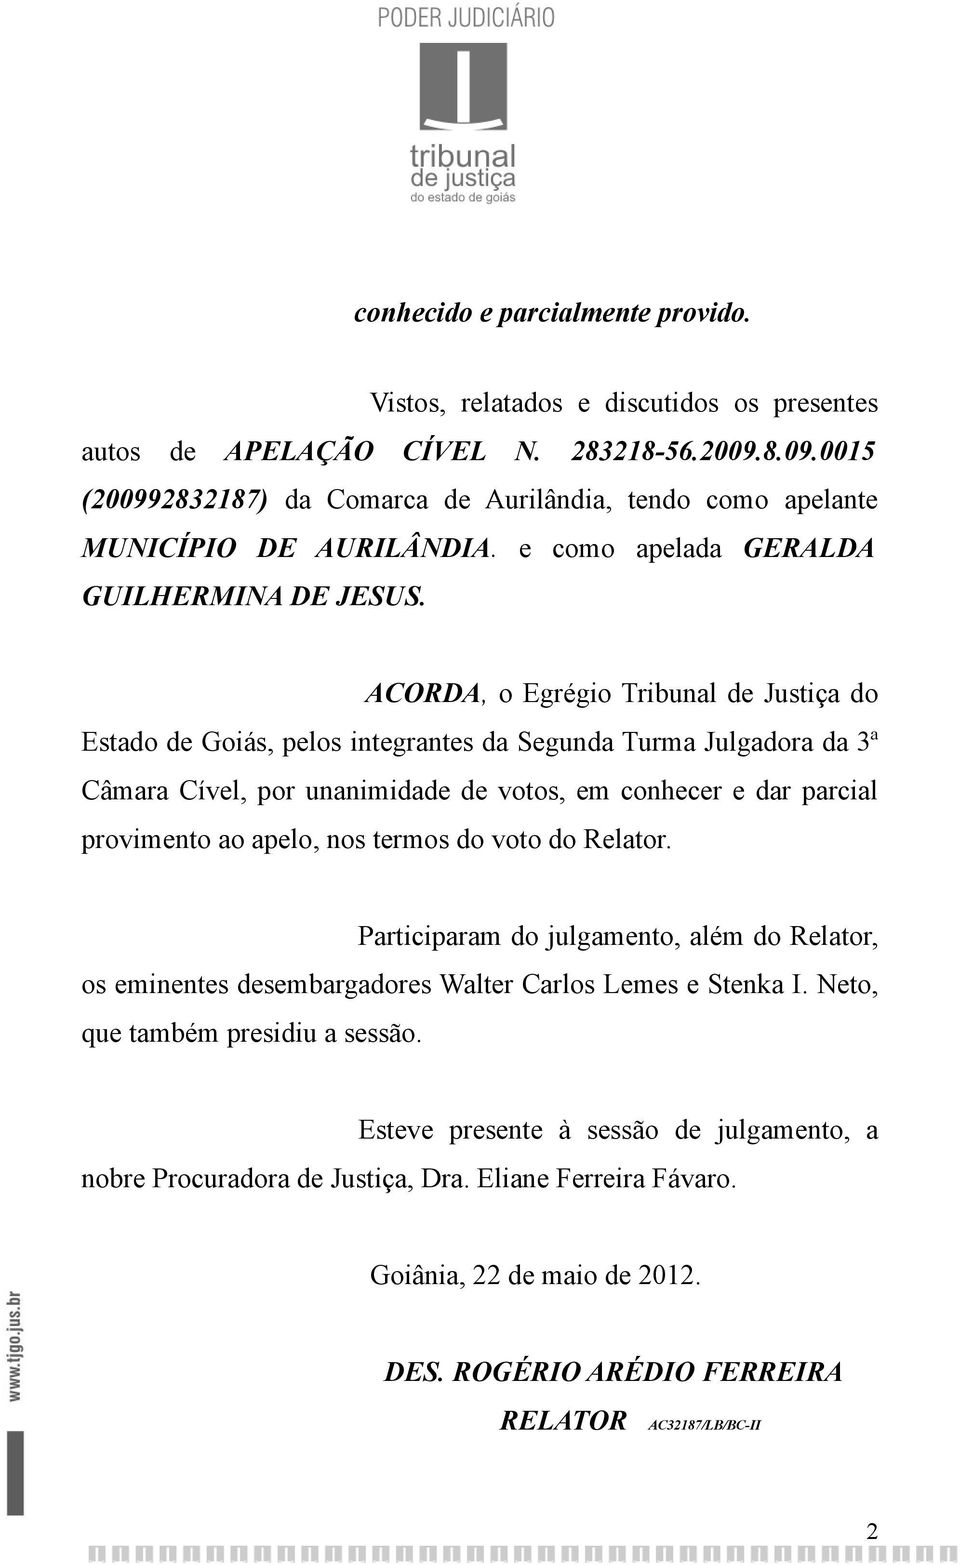 ACORDA, o Egrégio Tribunal de Justiça do Estado de Goiás, pelos integrantes da Segunda Turma Julgadora da 3ª Câmara Cível, por unanimidade de votos, em conhecer e dar parcial provimento ao apelo, nos